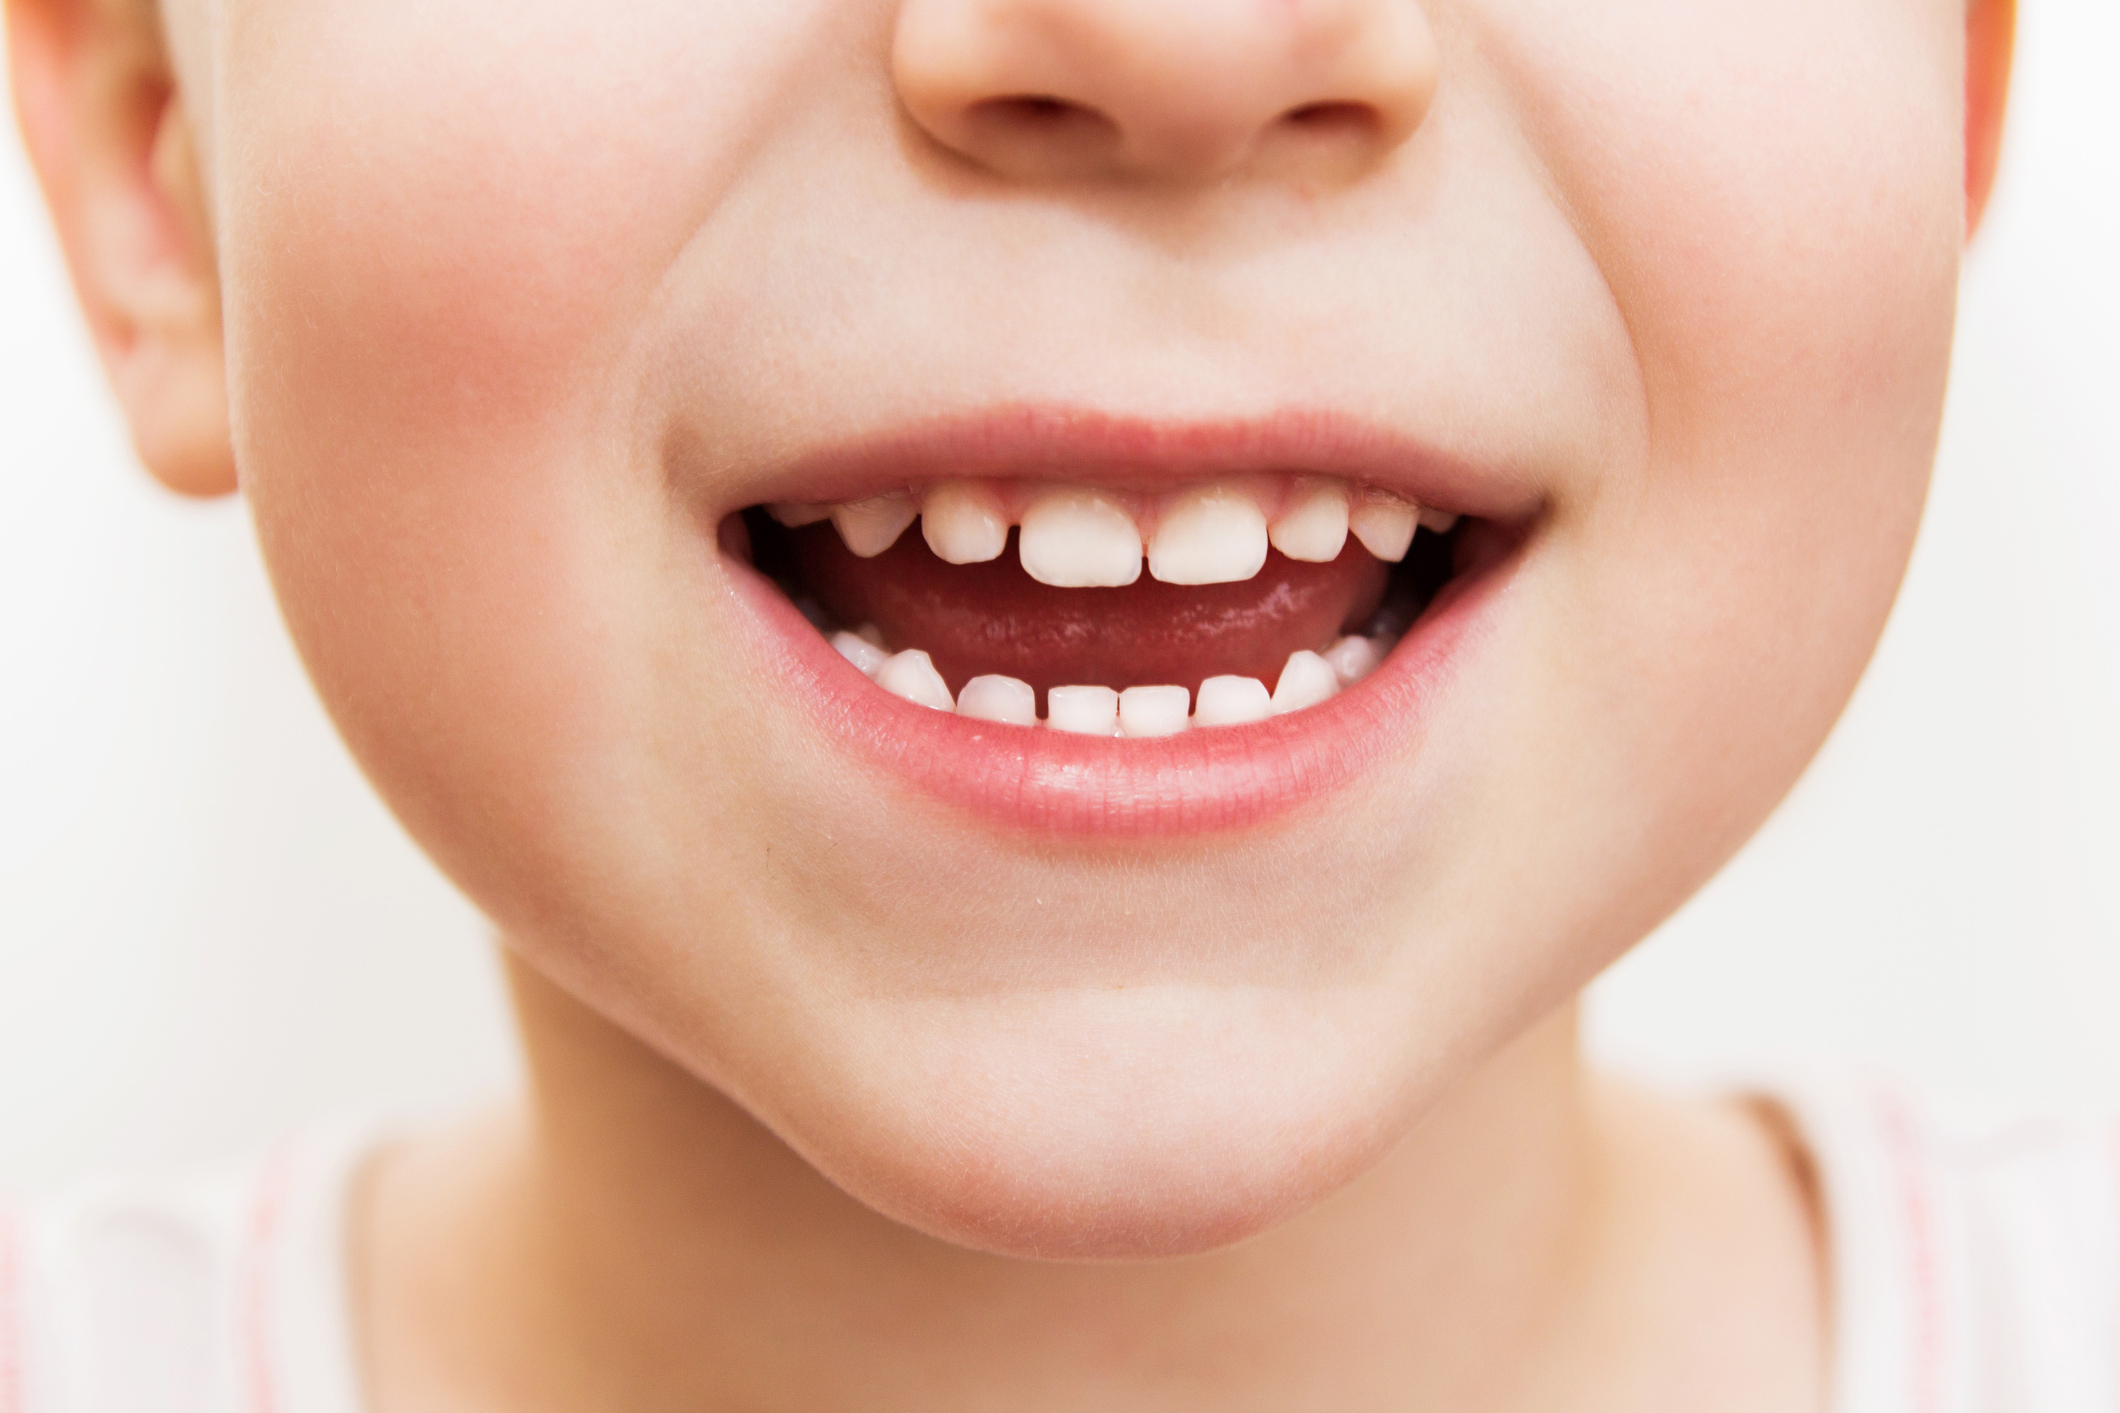 Kinder unter 6 Jahren sind am meisten gefährdet, beim Zähneputzen Zahnpasta zu verschlucken